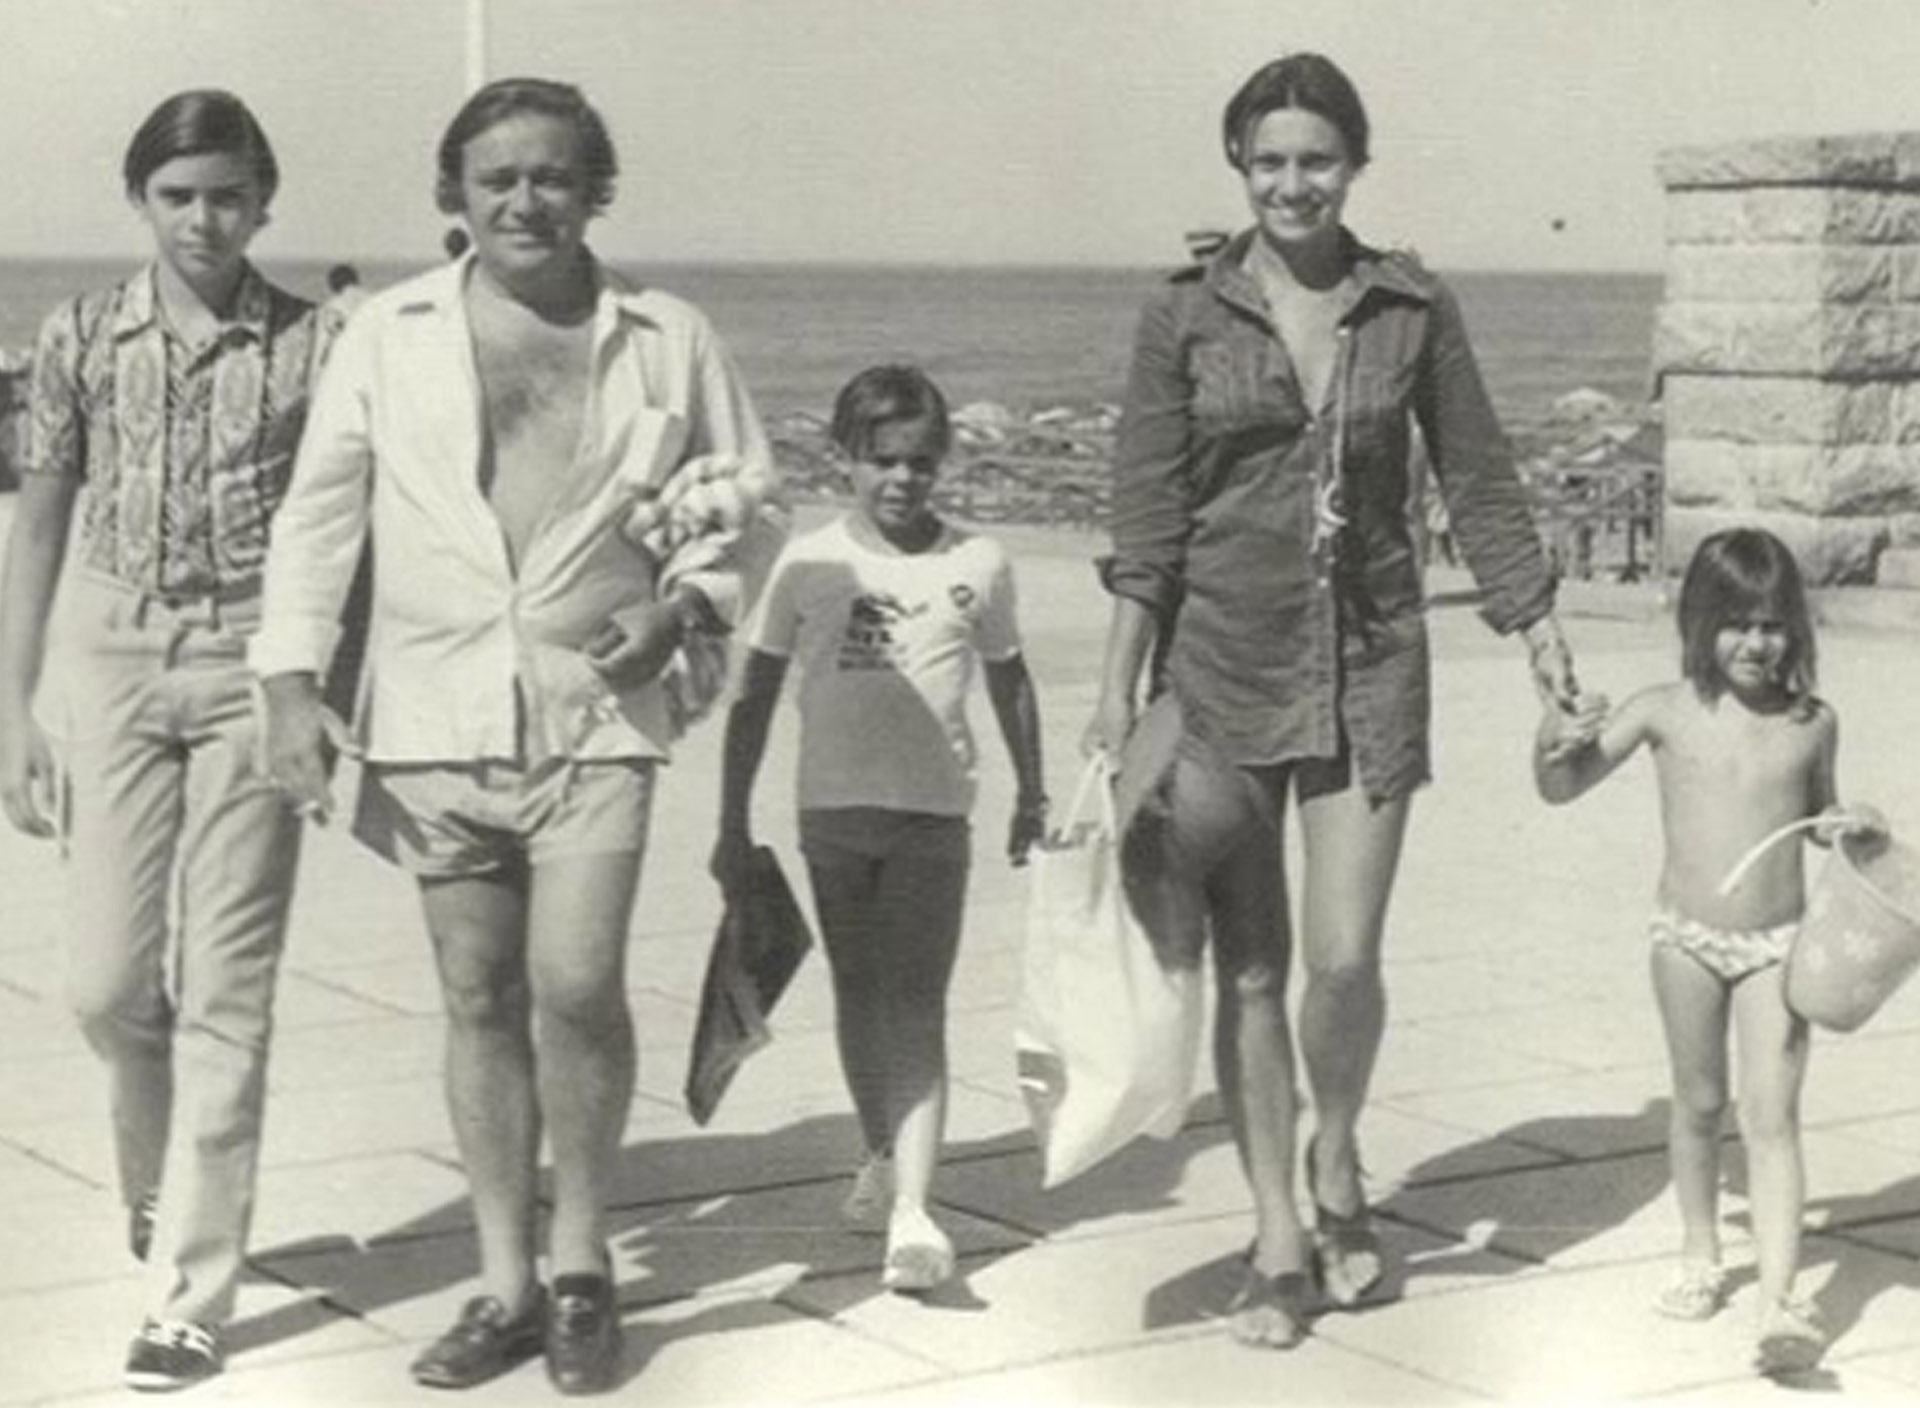 Berta y Tato Bores se casaron en 1954 y estuvieron juntos durante 42 años hasta el 11 de enero de 1996, día en que murió el humorista. Tuvieron tres hijos: Marina, Alejandro y Sebastián Borensztein, a quienes su madre describía como “muy buena gente”